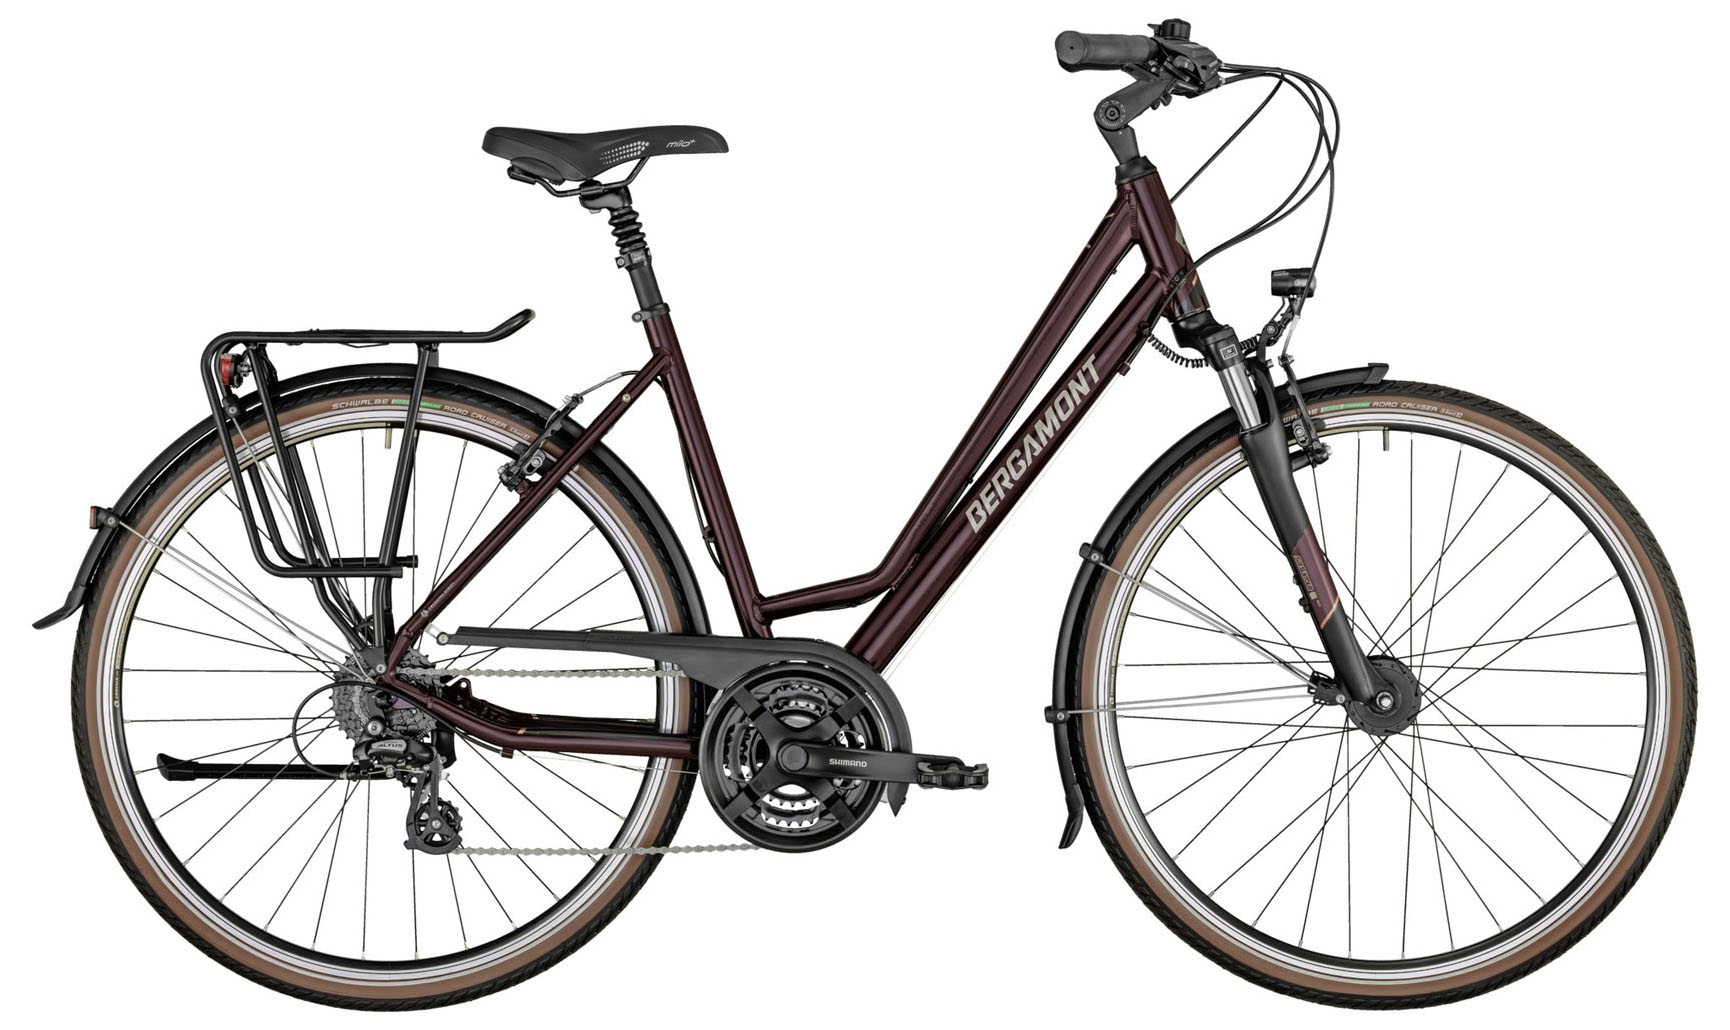  Отзывы о Женском велосипеде Bergamont Horizon 3 Amsterdam 2021